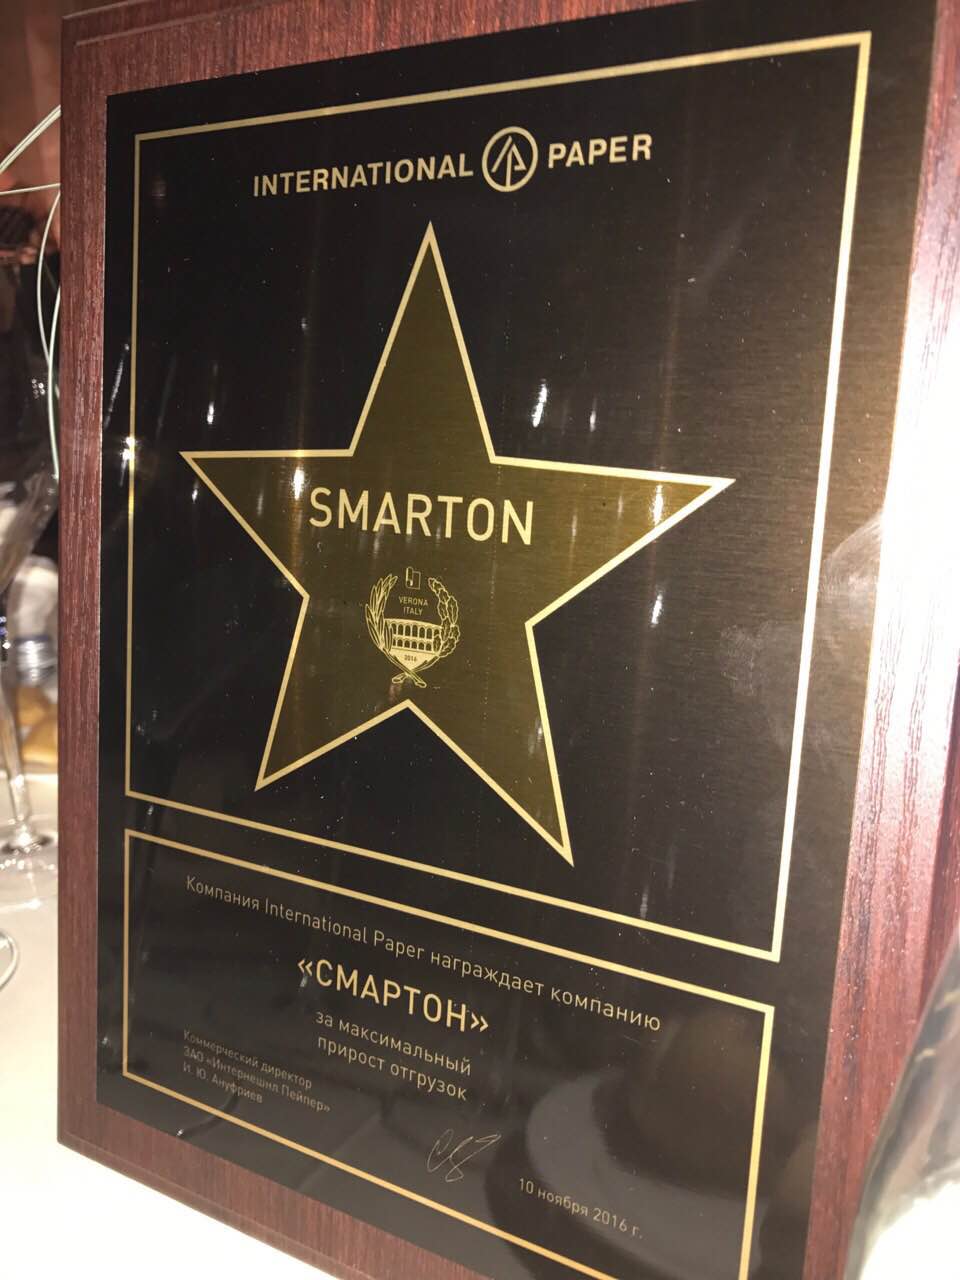 Смартон атрымаў узнагароду на канферэнцыі INTERNATIONAL PAPER у Вероне!